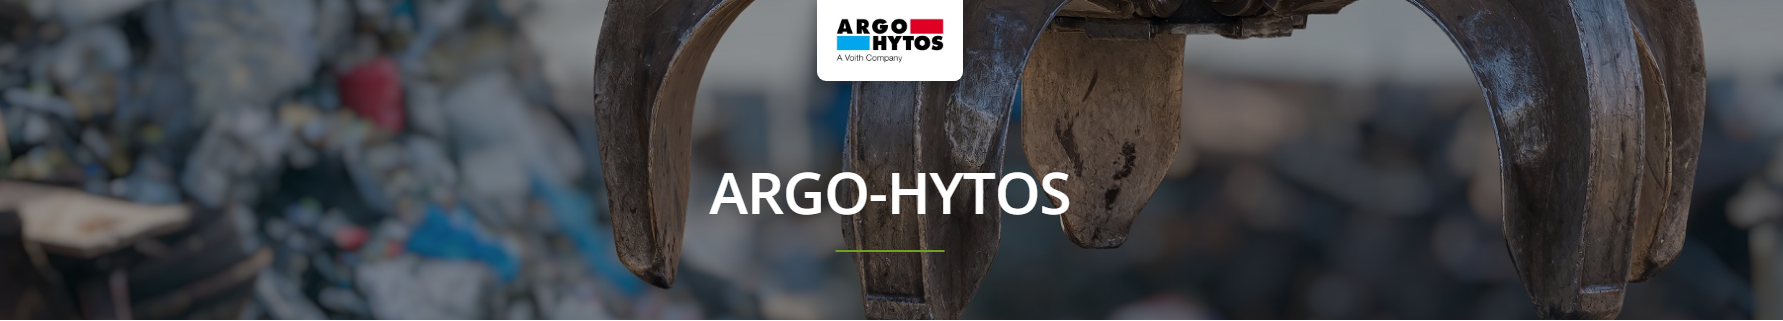 Argo-Hytos Accessories